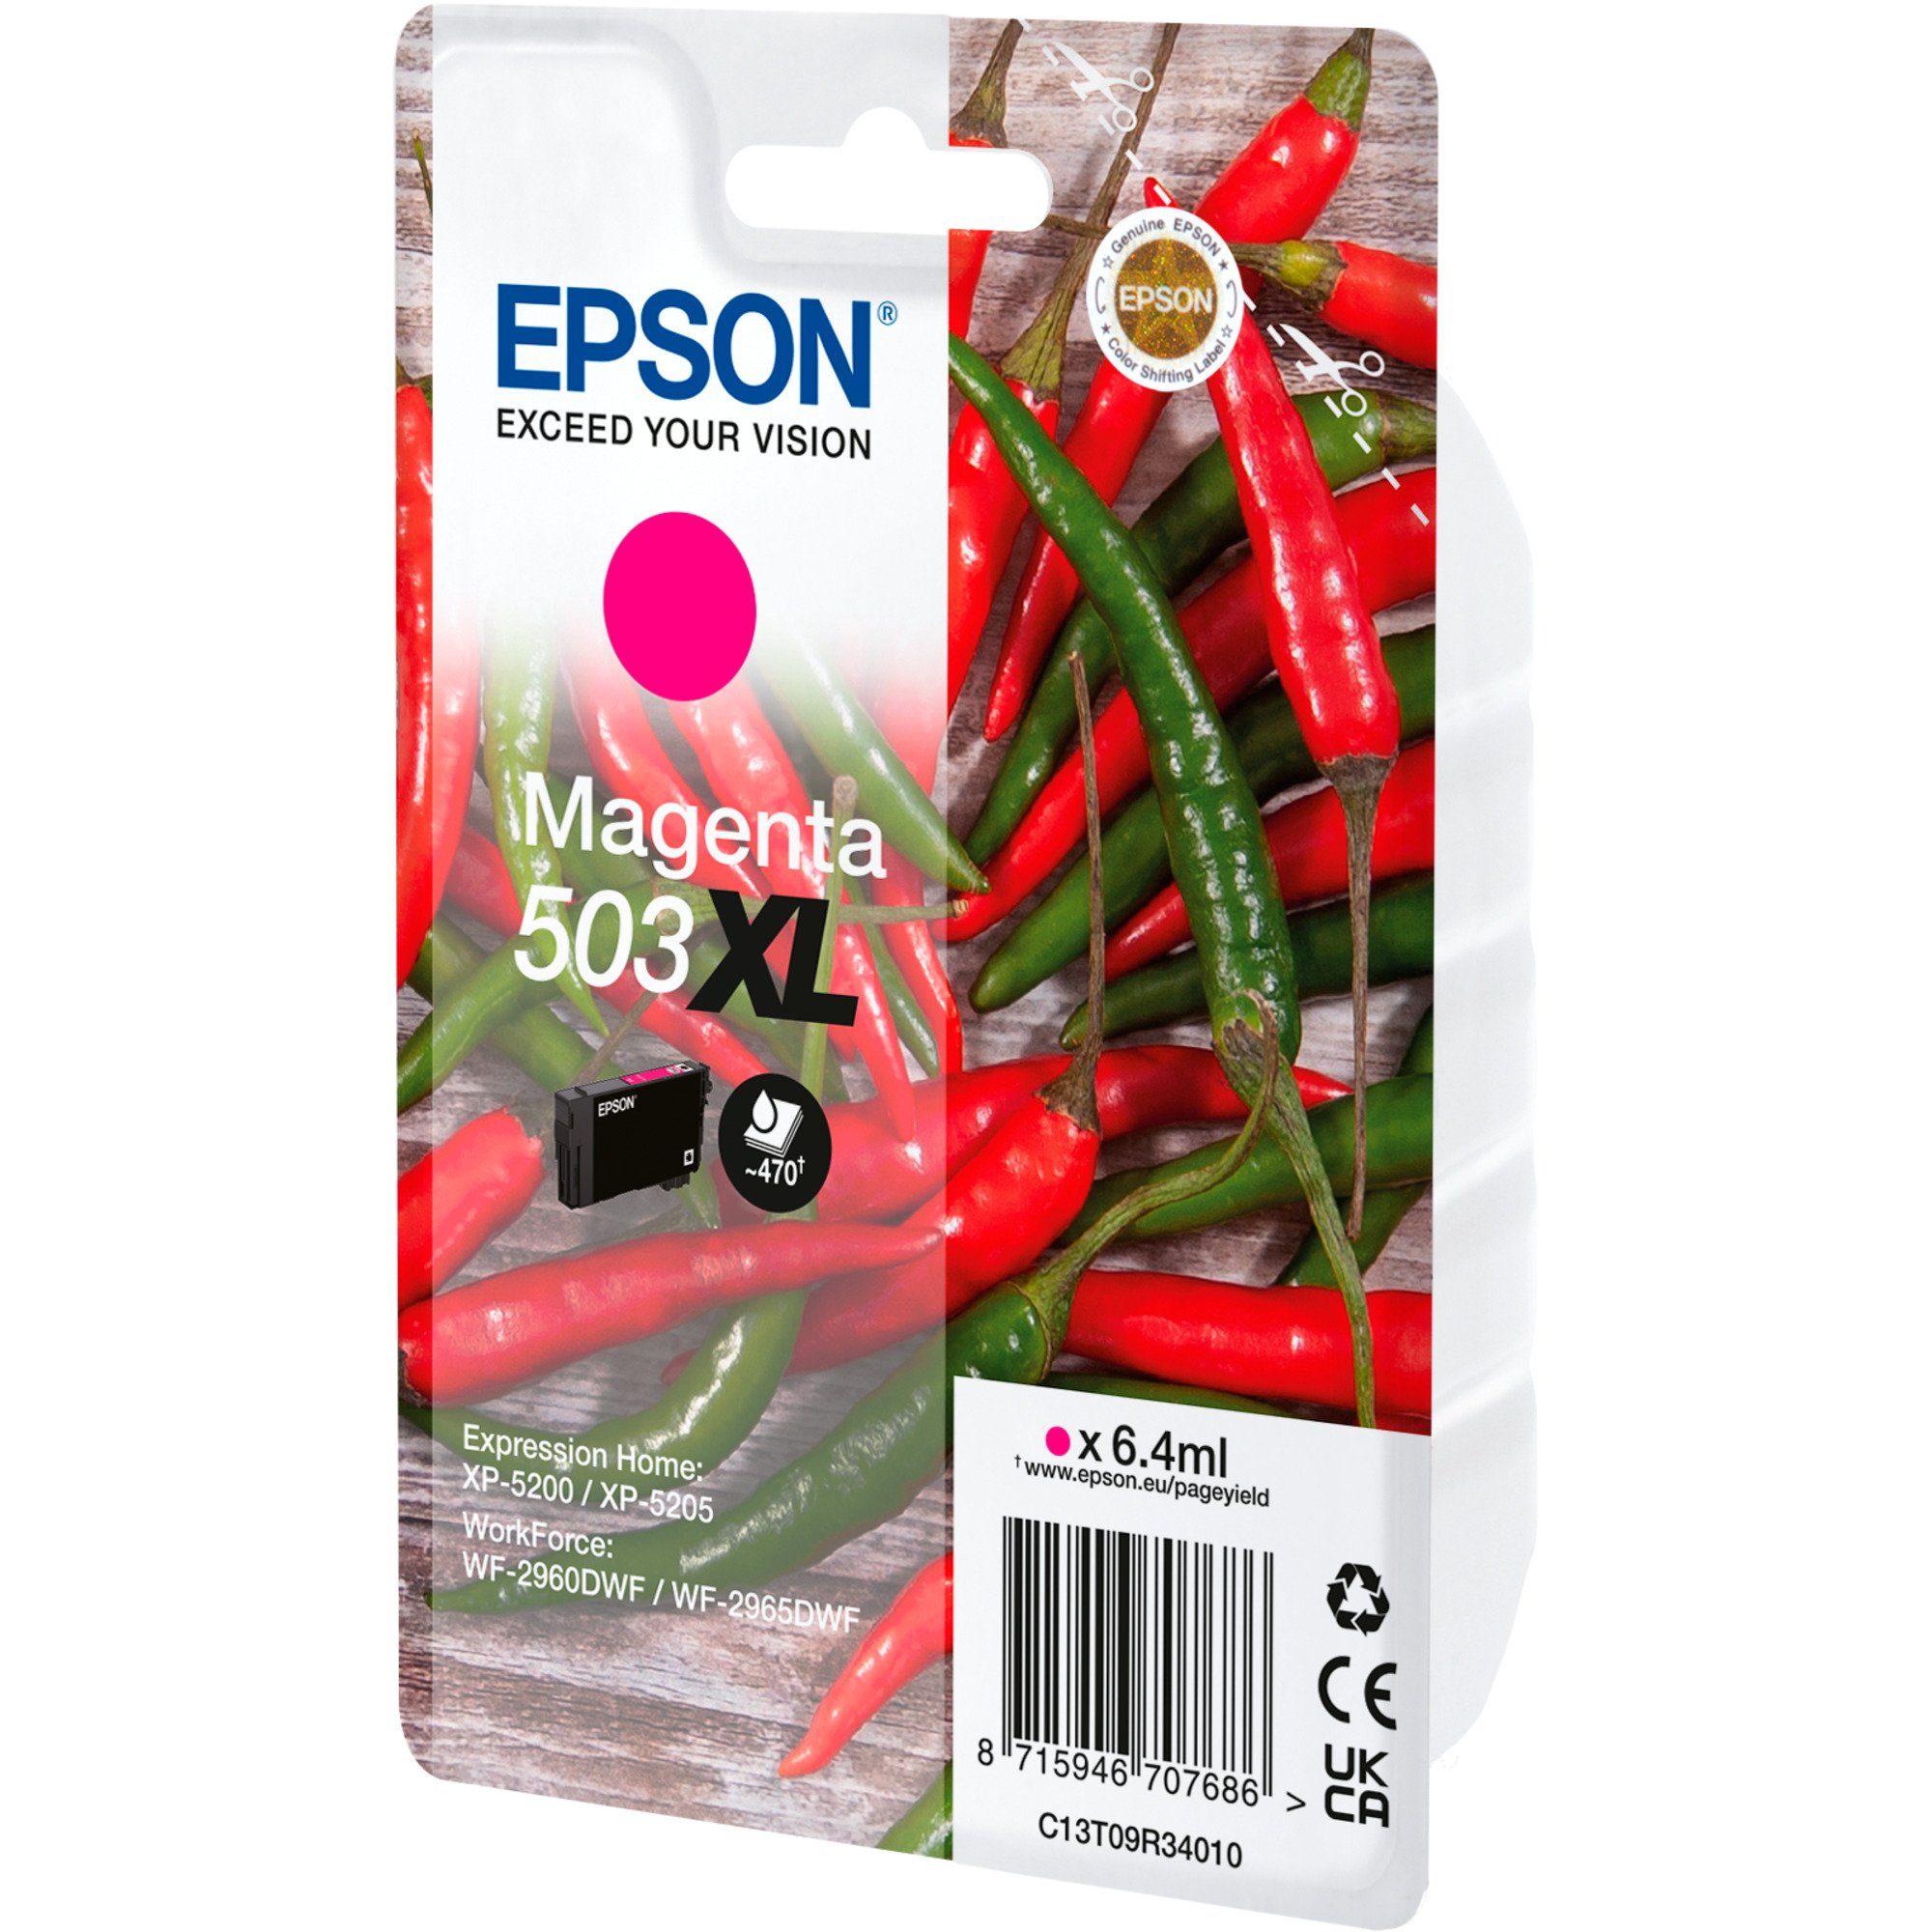 Epson Epson (C13T09R34010) 503XL Tintenpatrone magenta Tinte